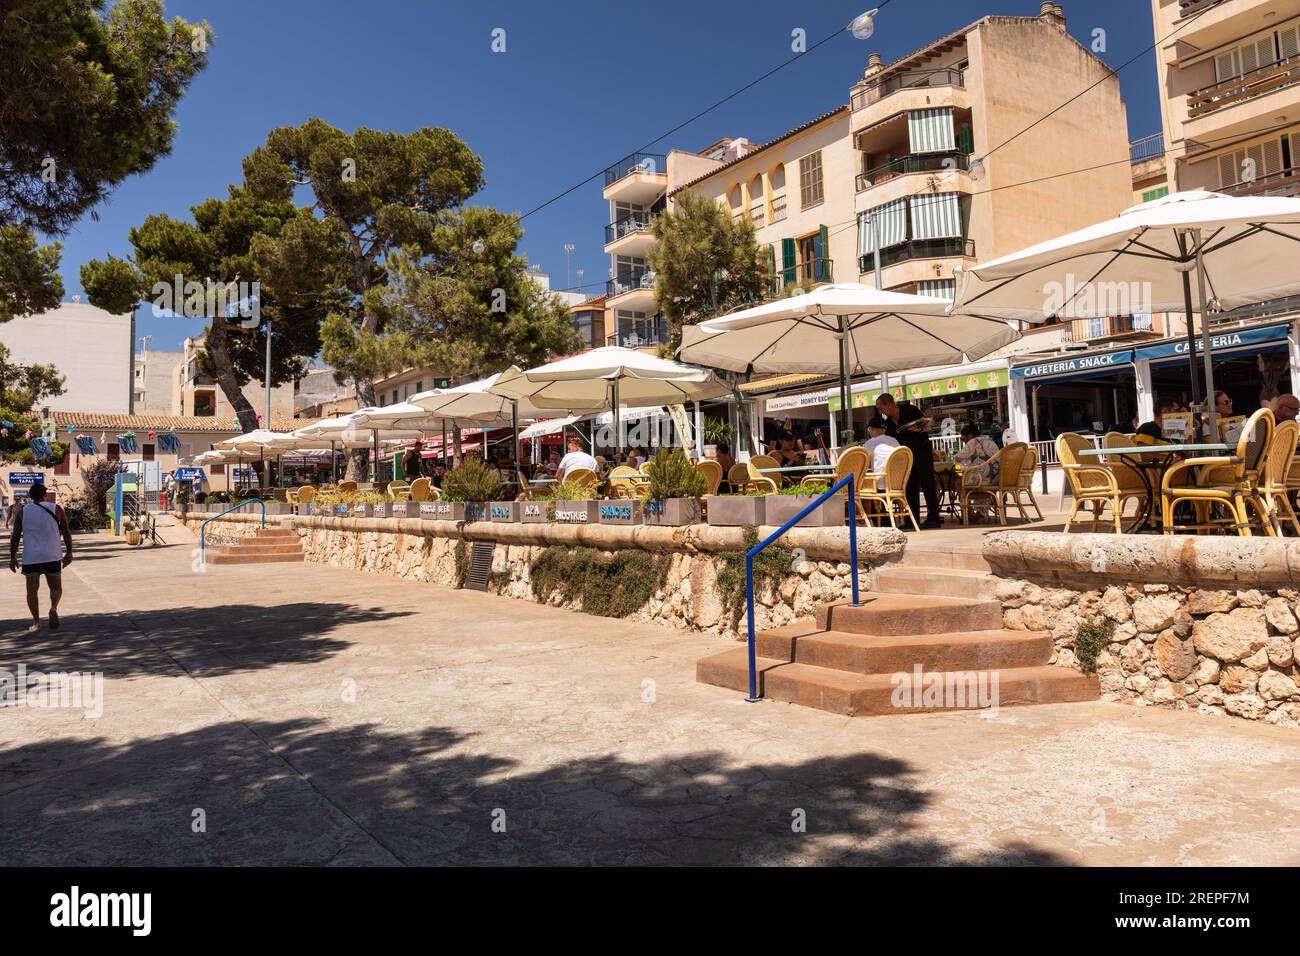 Picturesque Porto Cristo promenade lined with restaurants and cafes, Porto Cristo Majorca (Mallorca), Balearic Islands, Spain. Europe Stock Photo